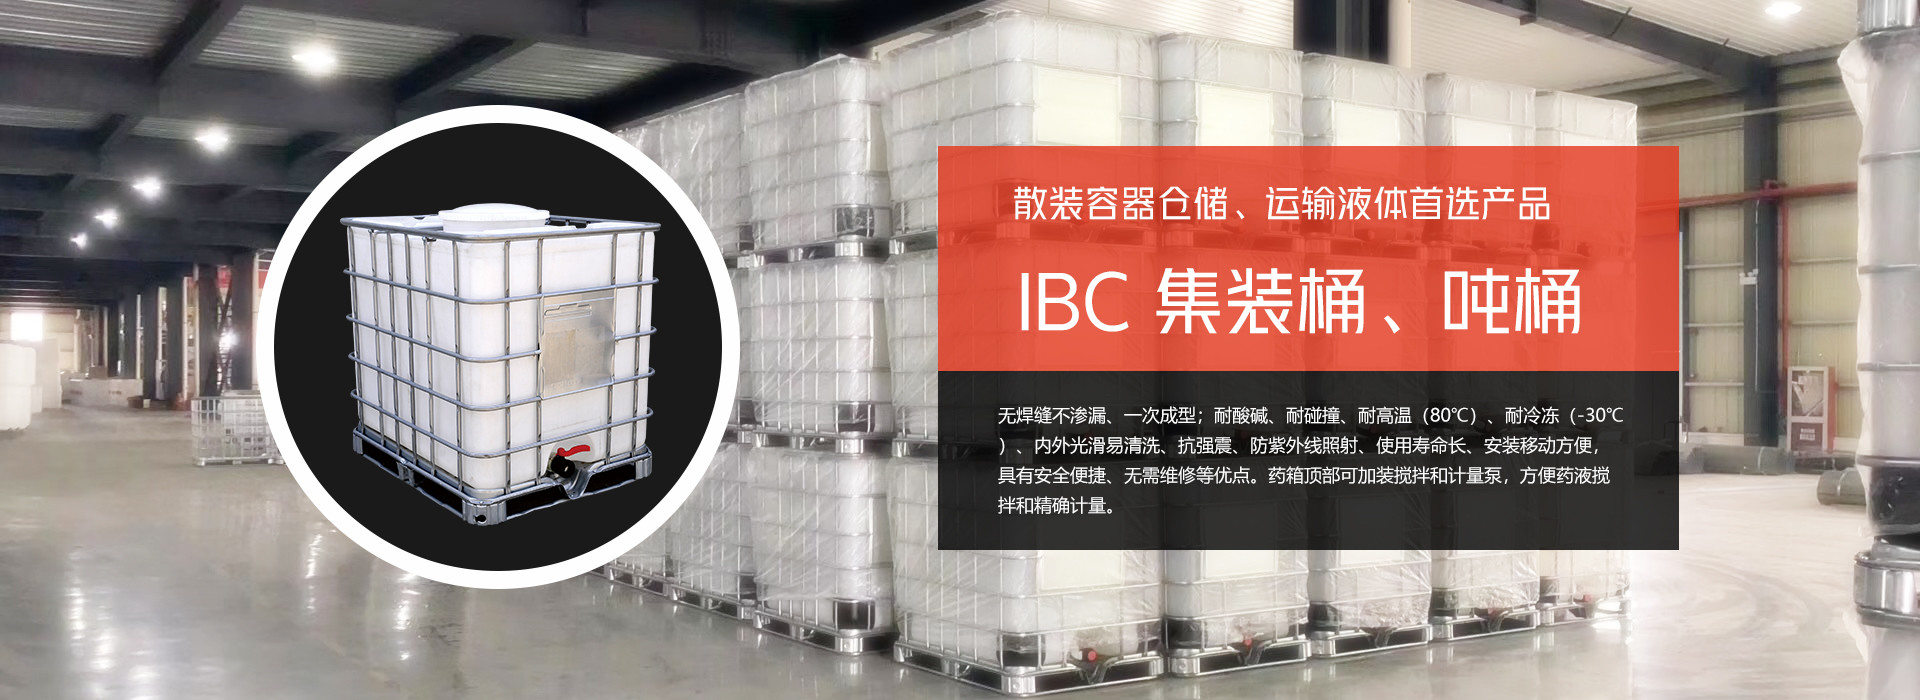 散装容器仓储、运输液体首选产品、IBC 集装桶、吨桶